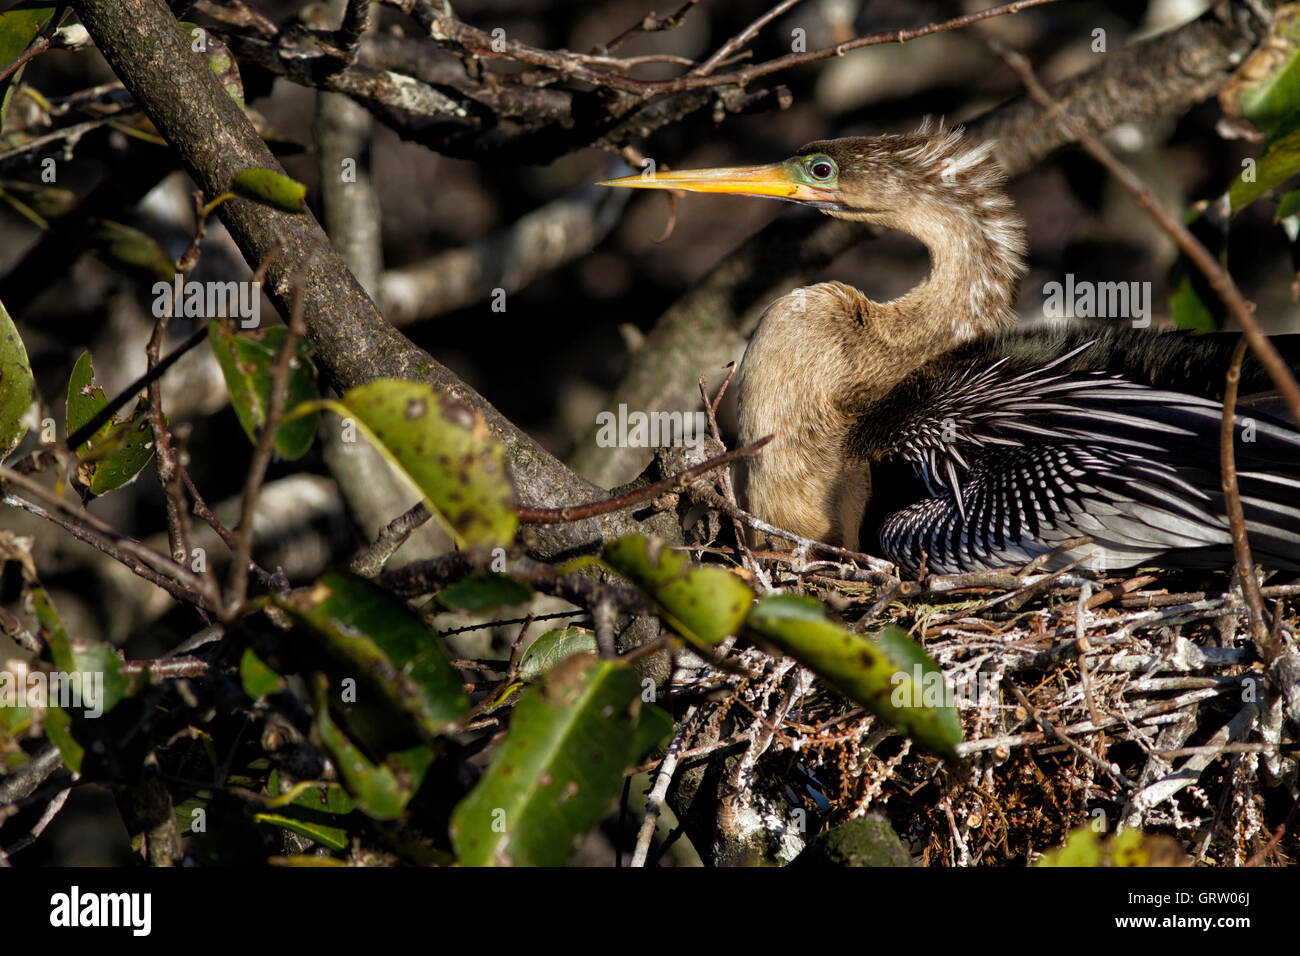 Weibliche Anhinga Anhinga sitzt auf ihrem Nest ausbrüten von Eiern. Wie das Männchen hat sie ein Rubin Auge und grünlich blauen Lore. Stockfoto